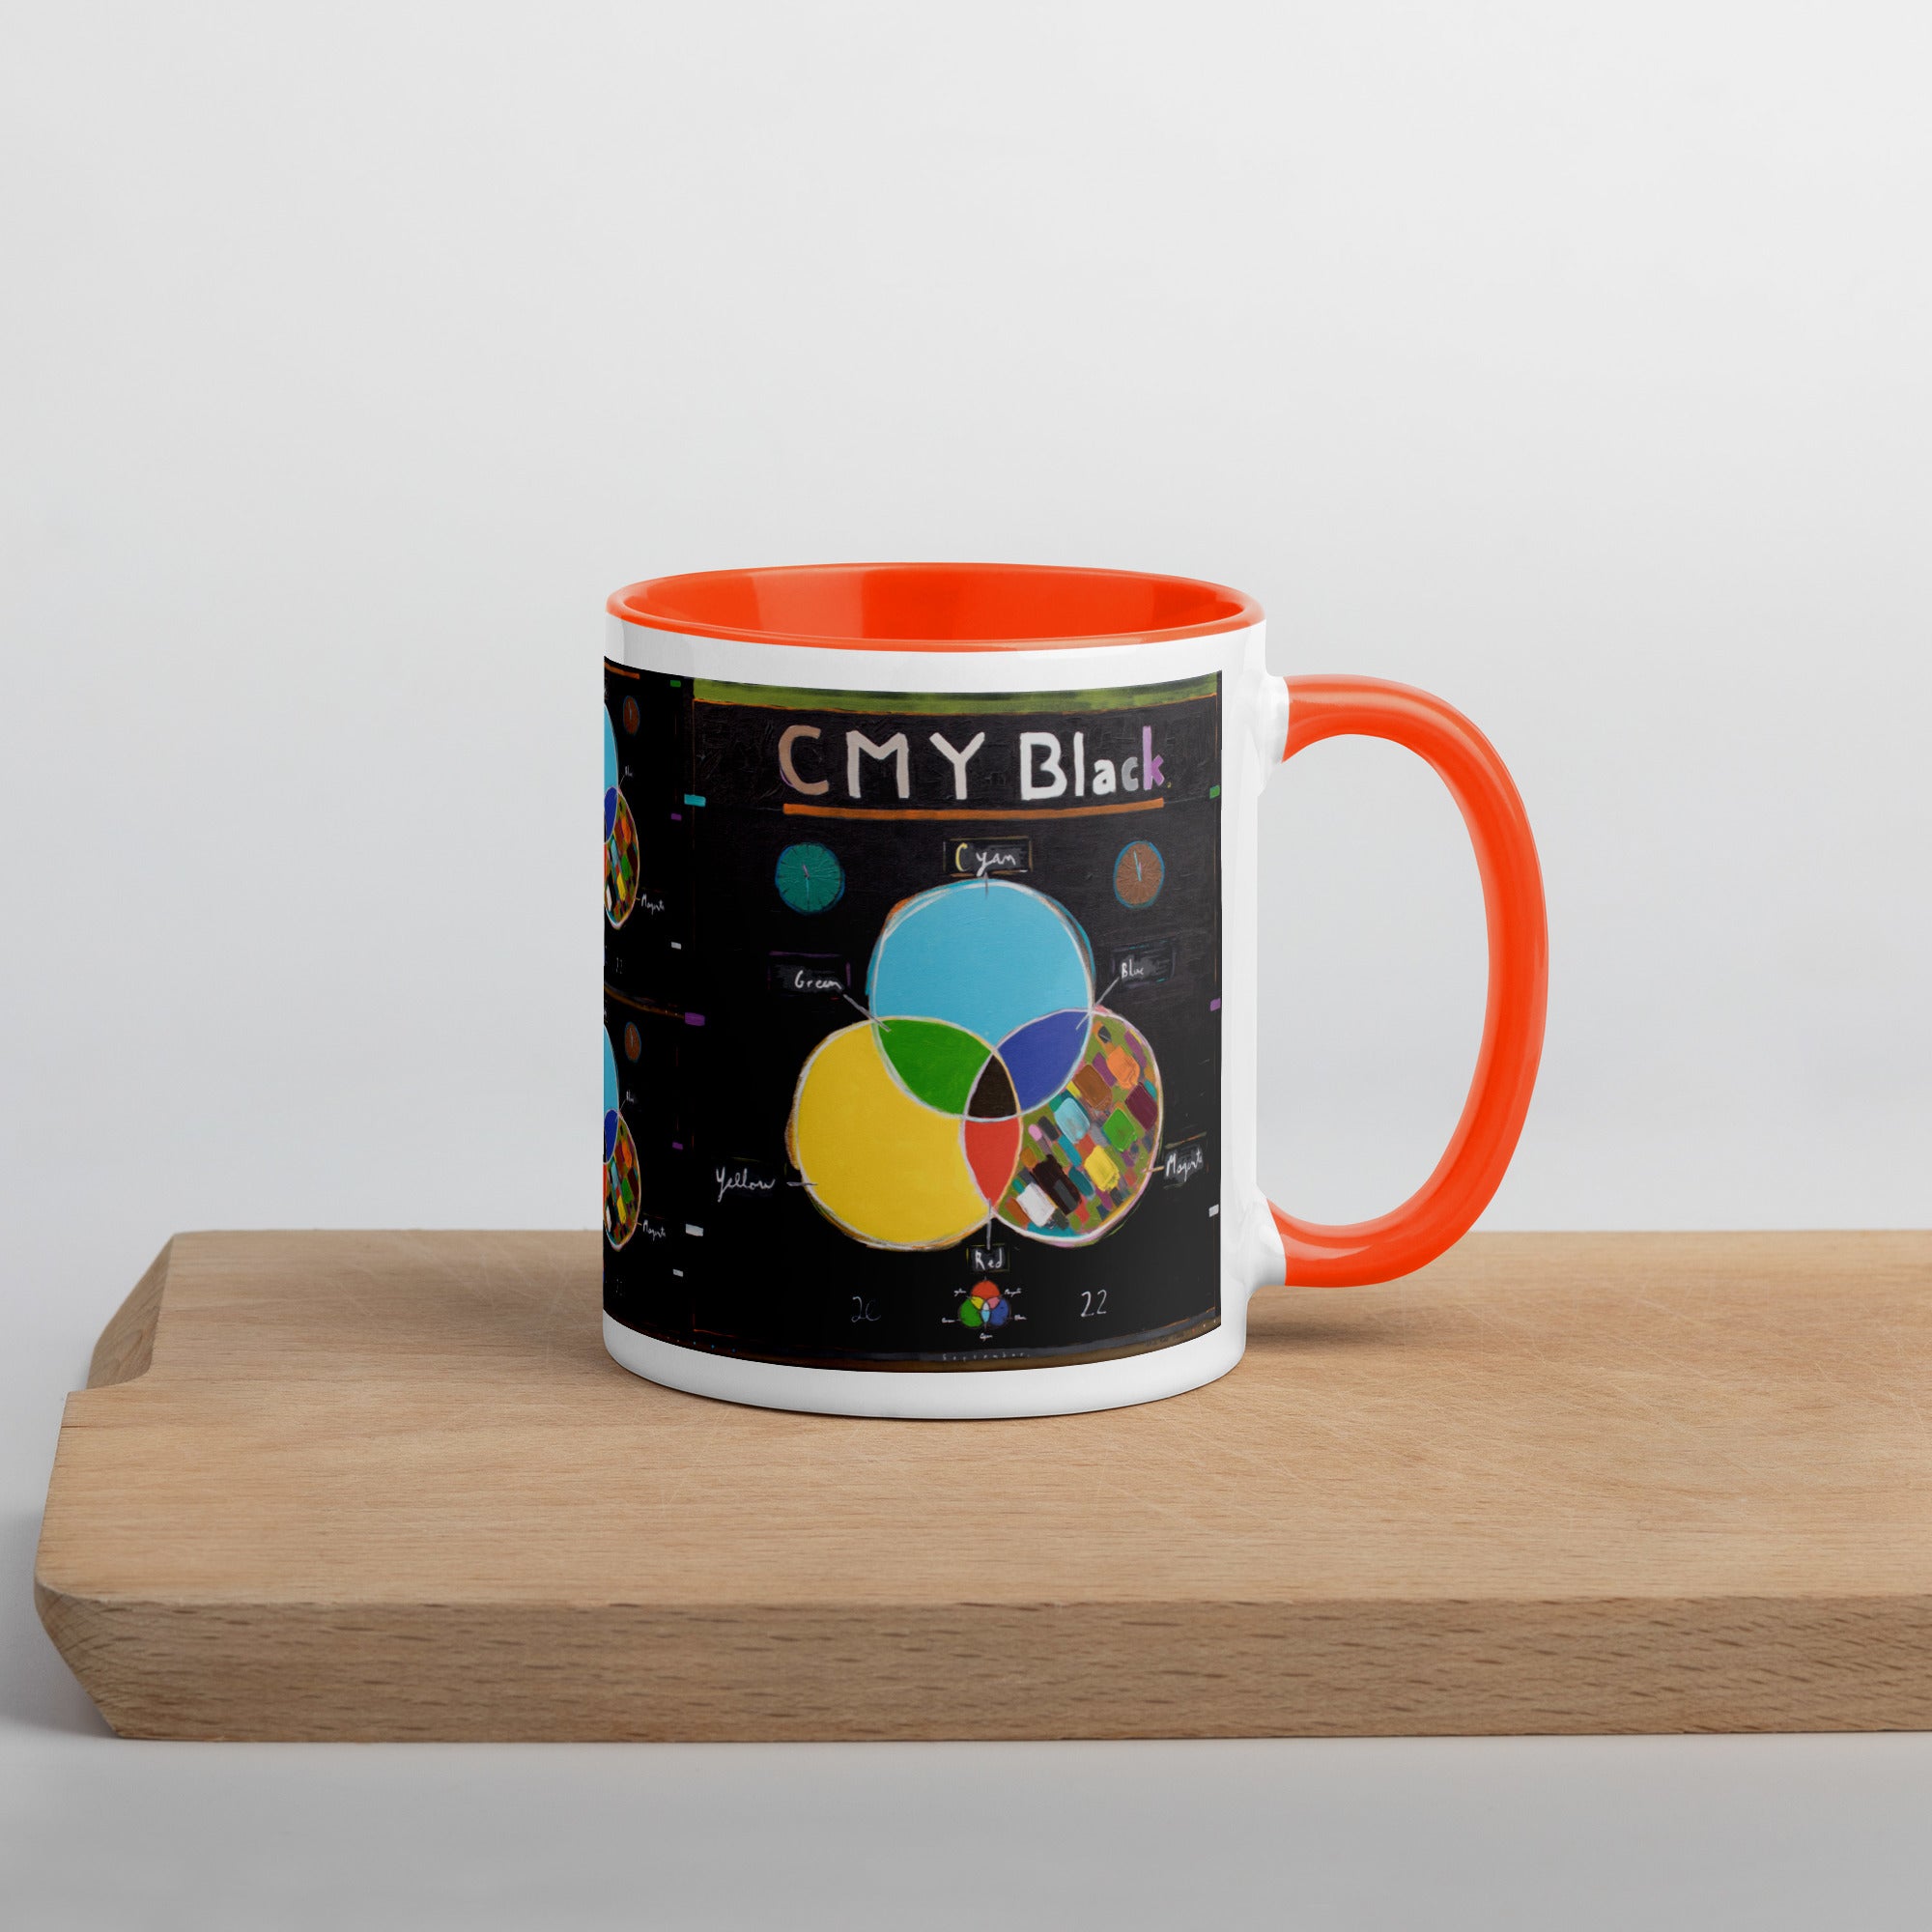 CMY Black [mug with color inside]